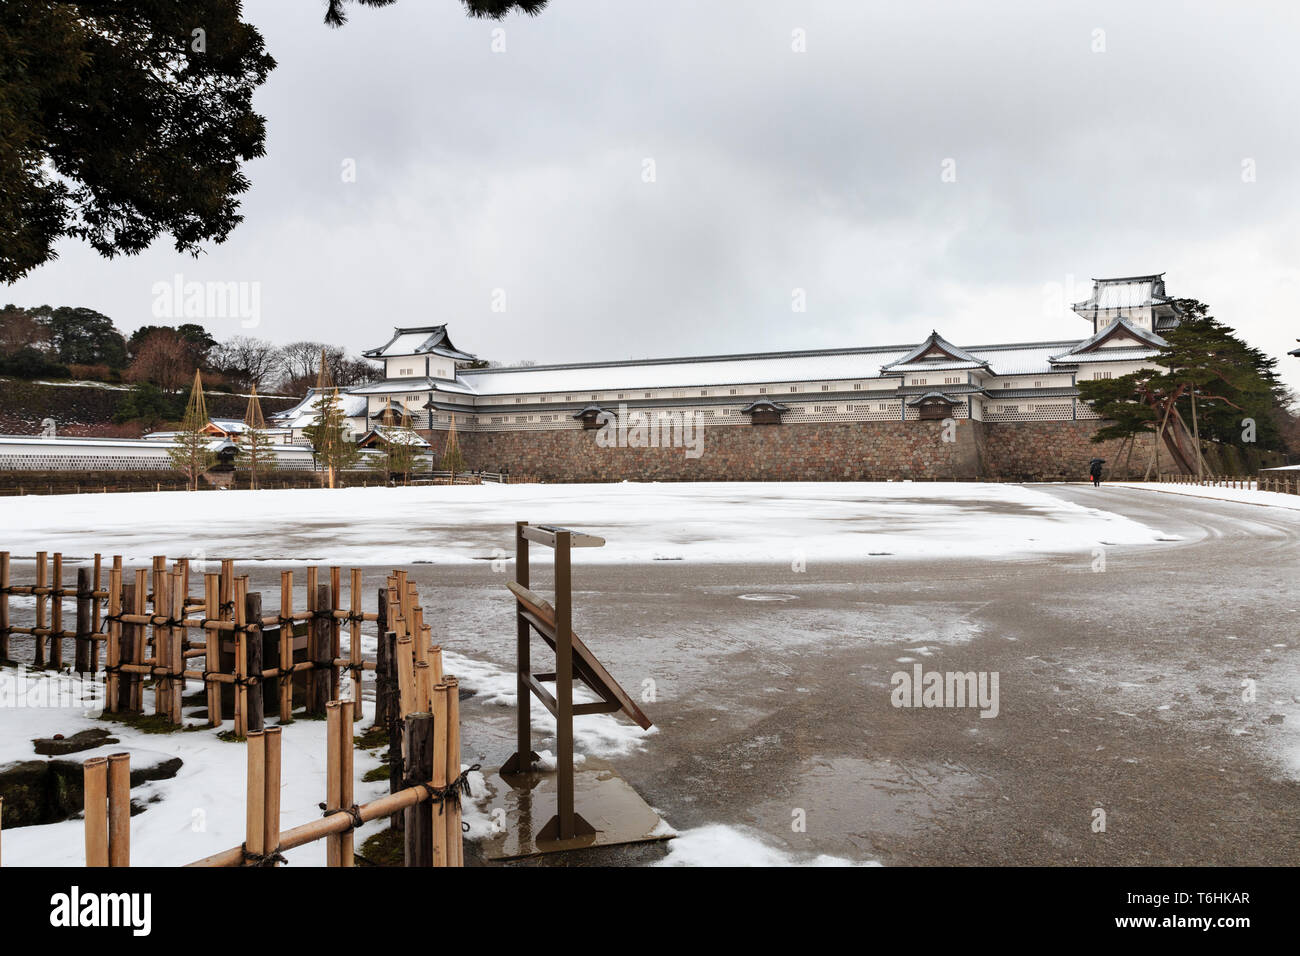 The Gojukken Nagaya, a tamon yagura, and Hashizume-mon Tsuzuki Yagura, gate and turret, Kanazawa castle, after snowfall. Dark grey clouds. Stock Photo